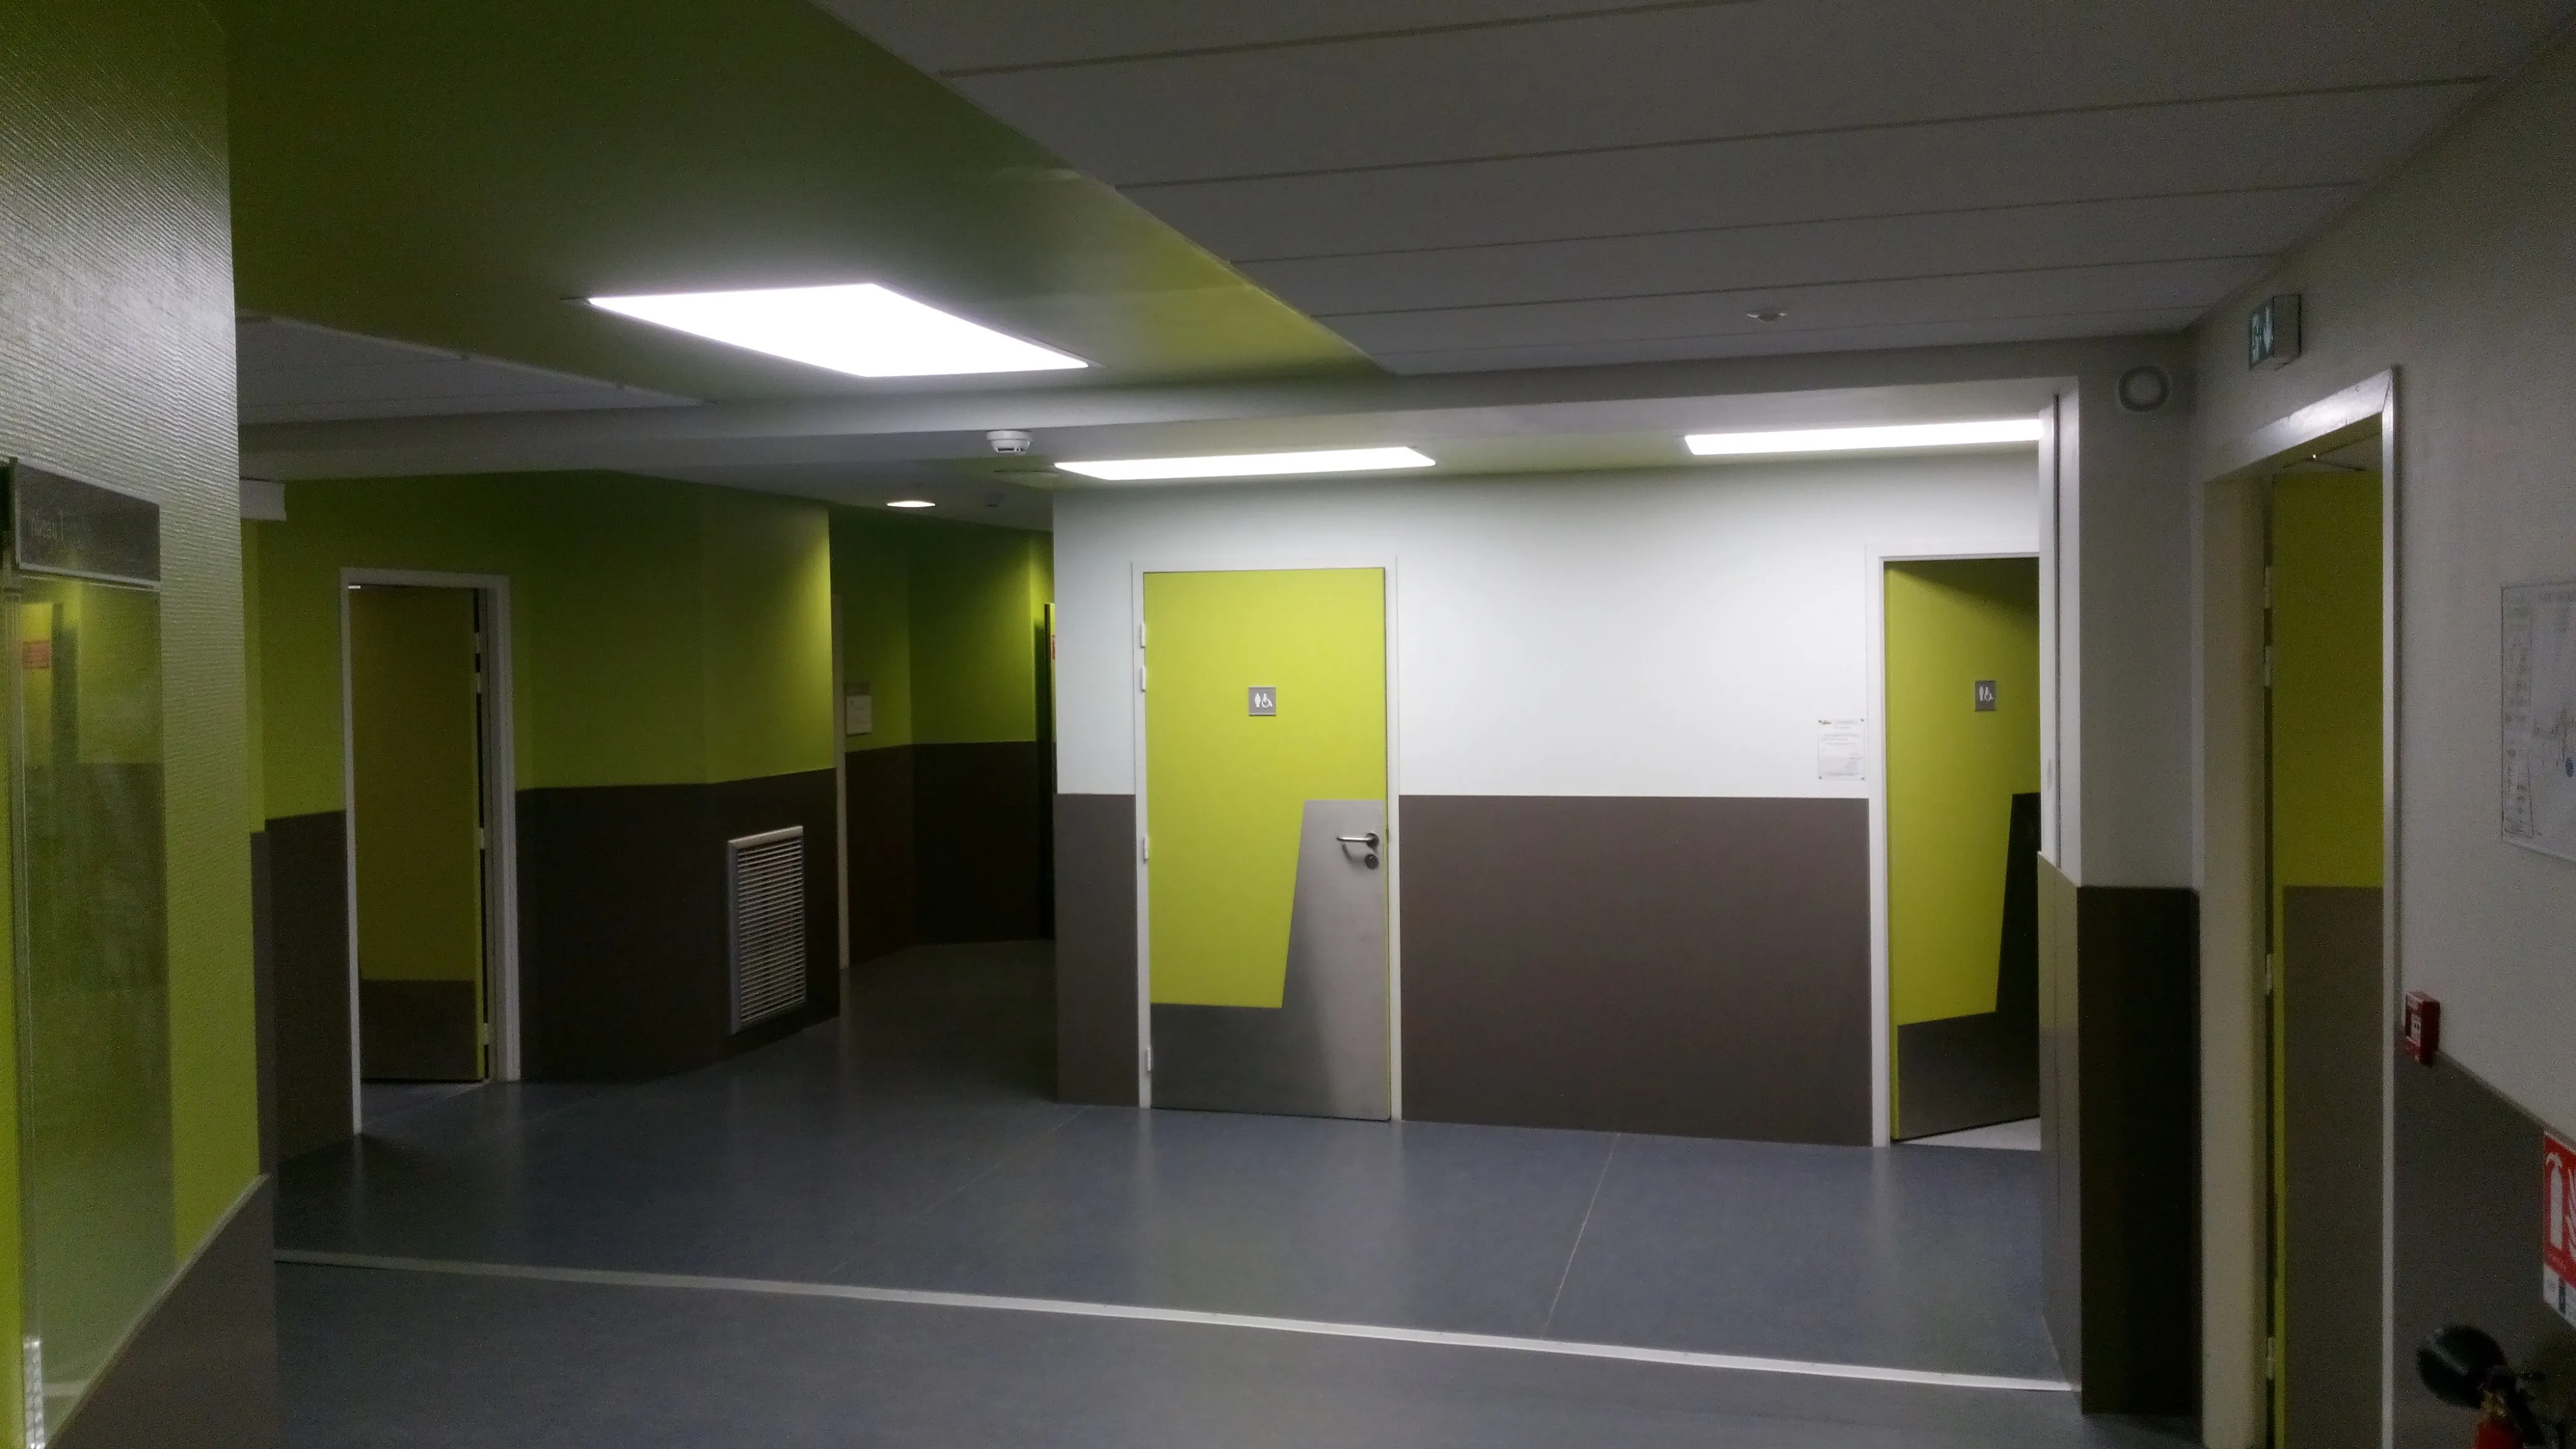 Panneaux d'éclairage LED dans un couloir de collège